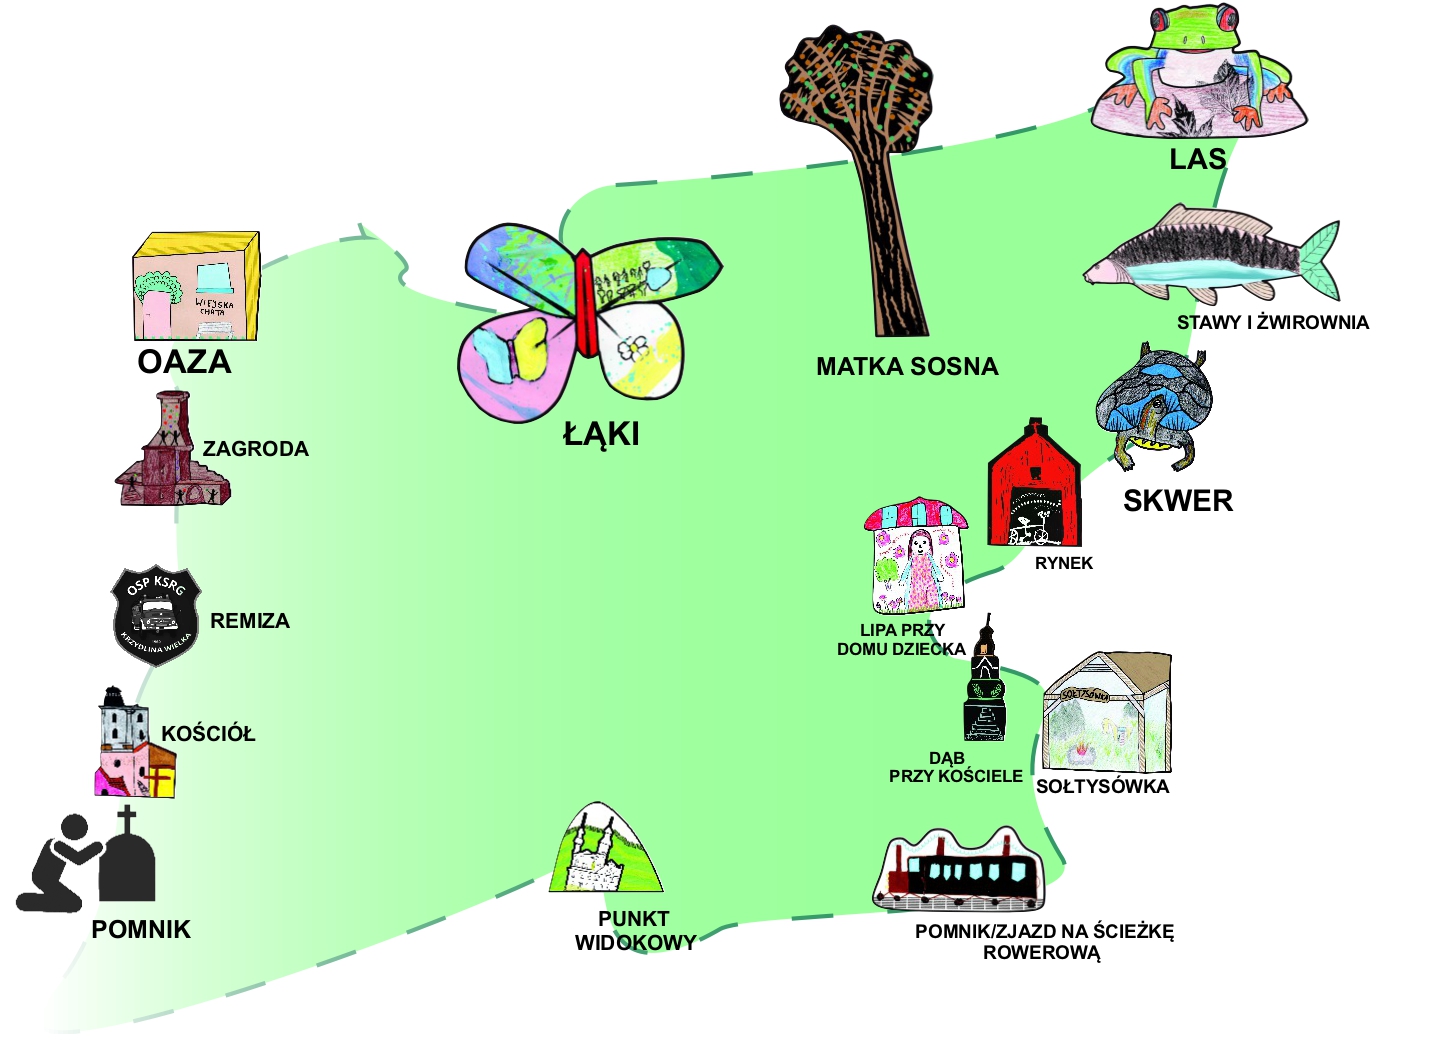 Mapa ścieżki przedstawiająca przystanki których ozdobą są ławki w kształcie charakterystycznych dla danego miejsca atrakcji, przedstawionych oczami dziecka w formie rysunków wykonanych na warsztatach 